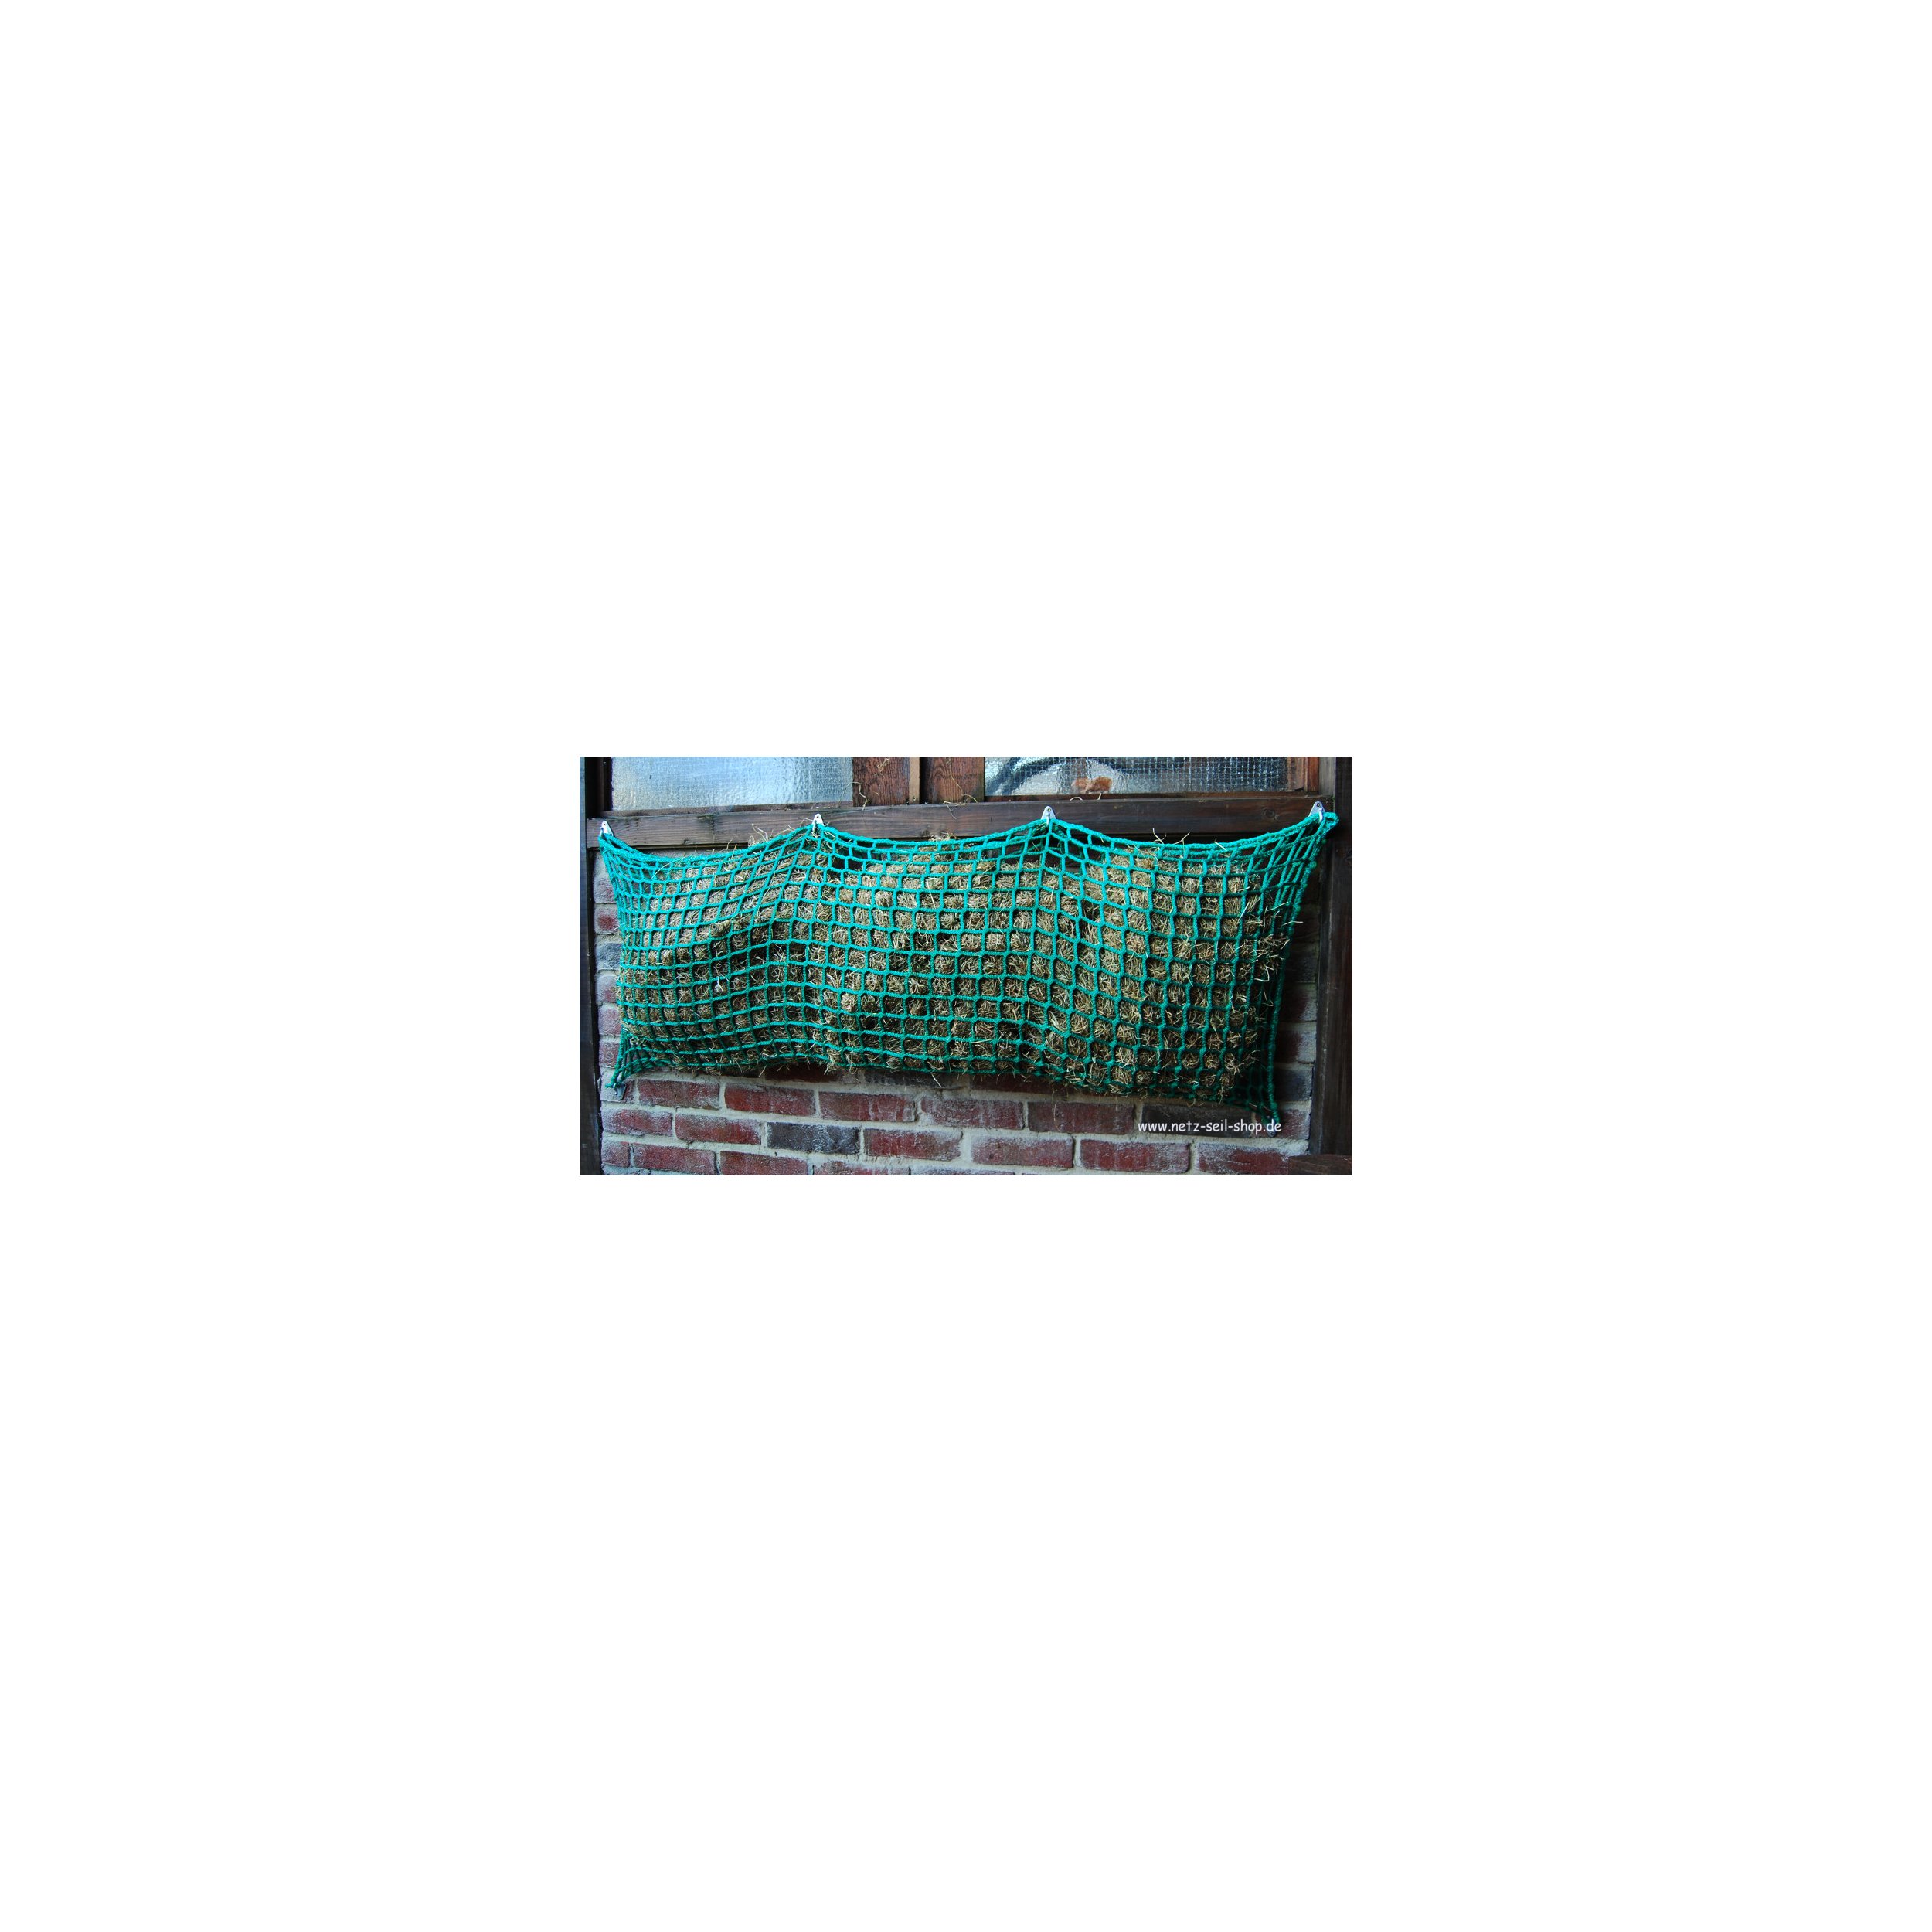 Hooi net in zakvorm, 1,60 m breed, hoogte 1,00 m Ø 5 mm garen dikte, # 45 mm maas